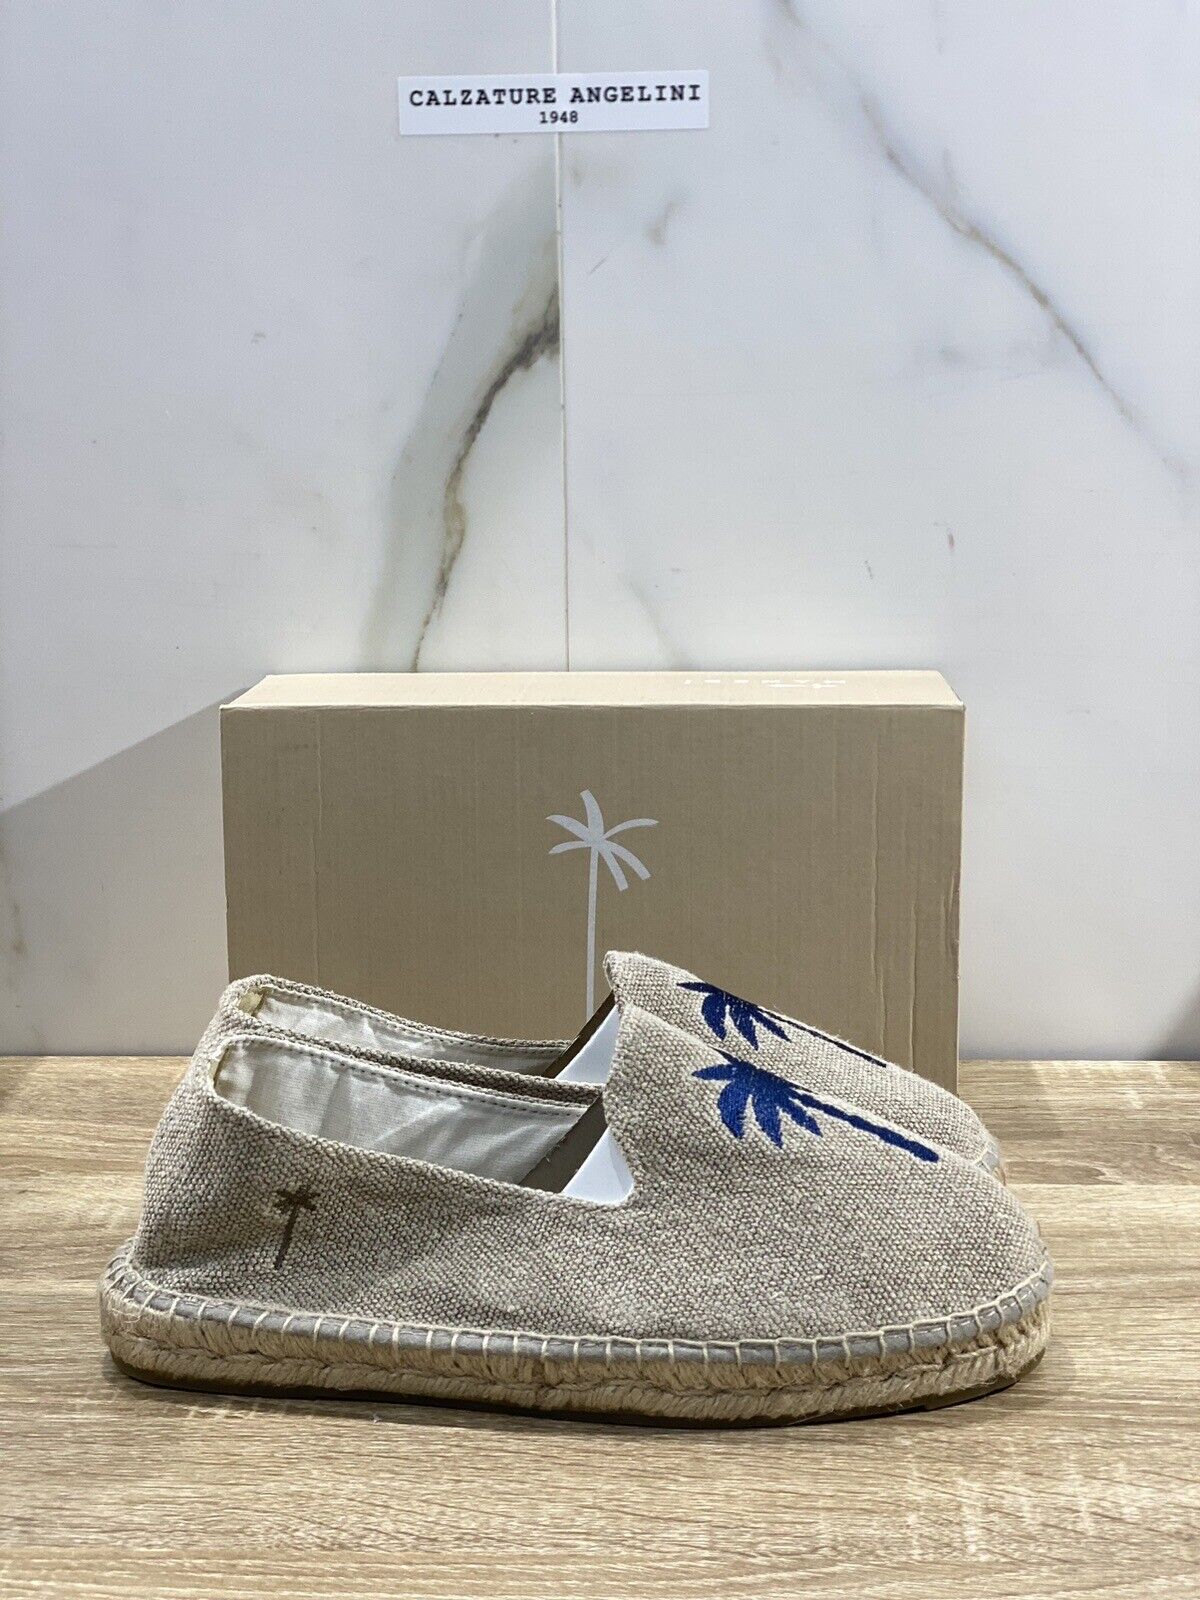 Manebi’ Uomo Espadrilles Mocassino Sand Casual Summer Shoes 46